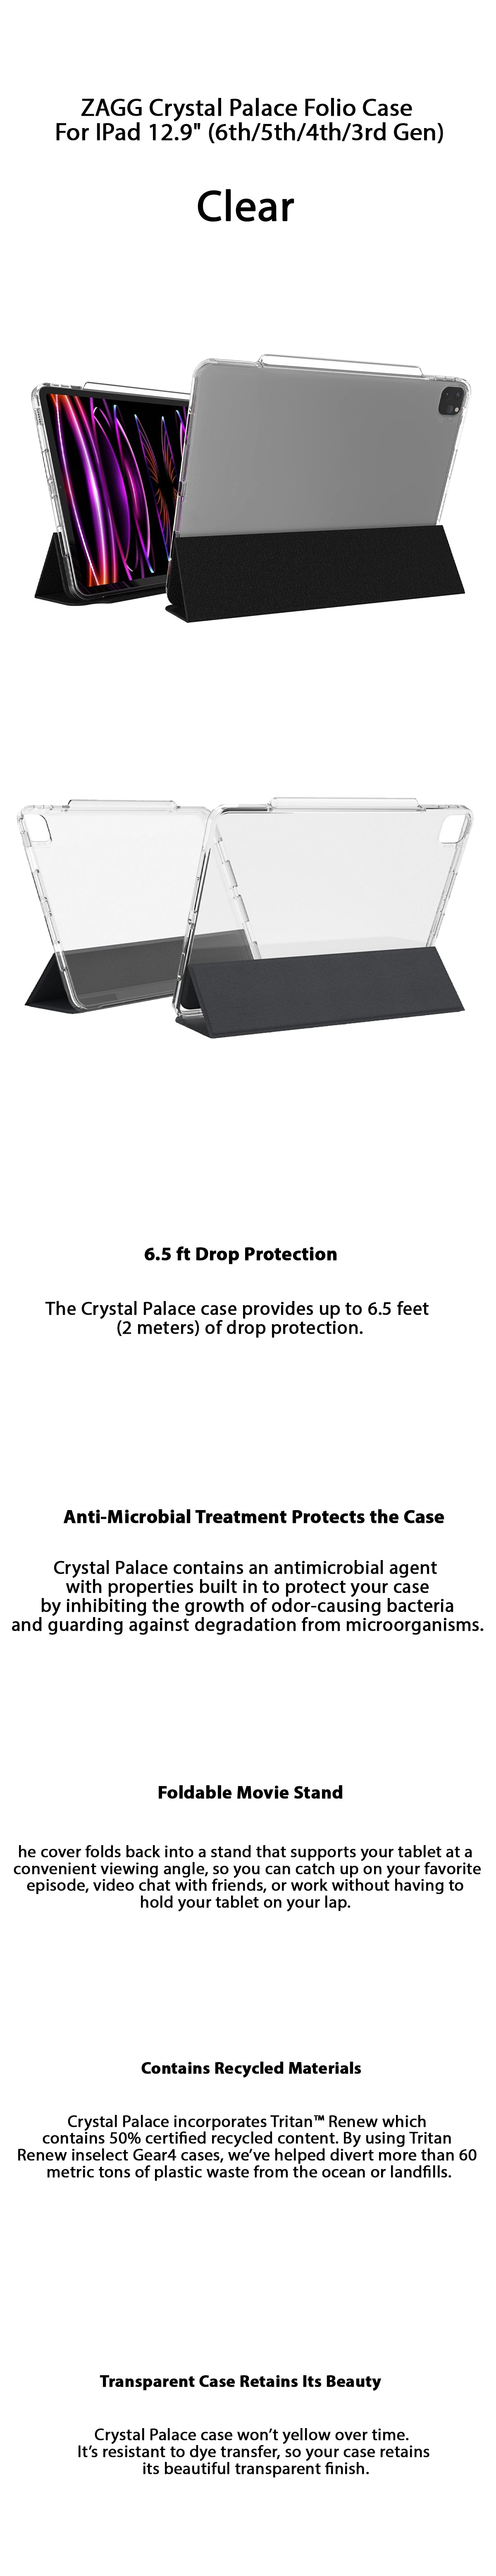 ZAGG Crystal Palace Folio Case For IPad Pro 12.9